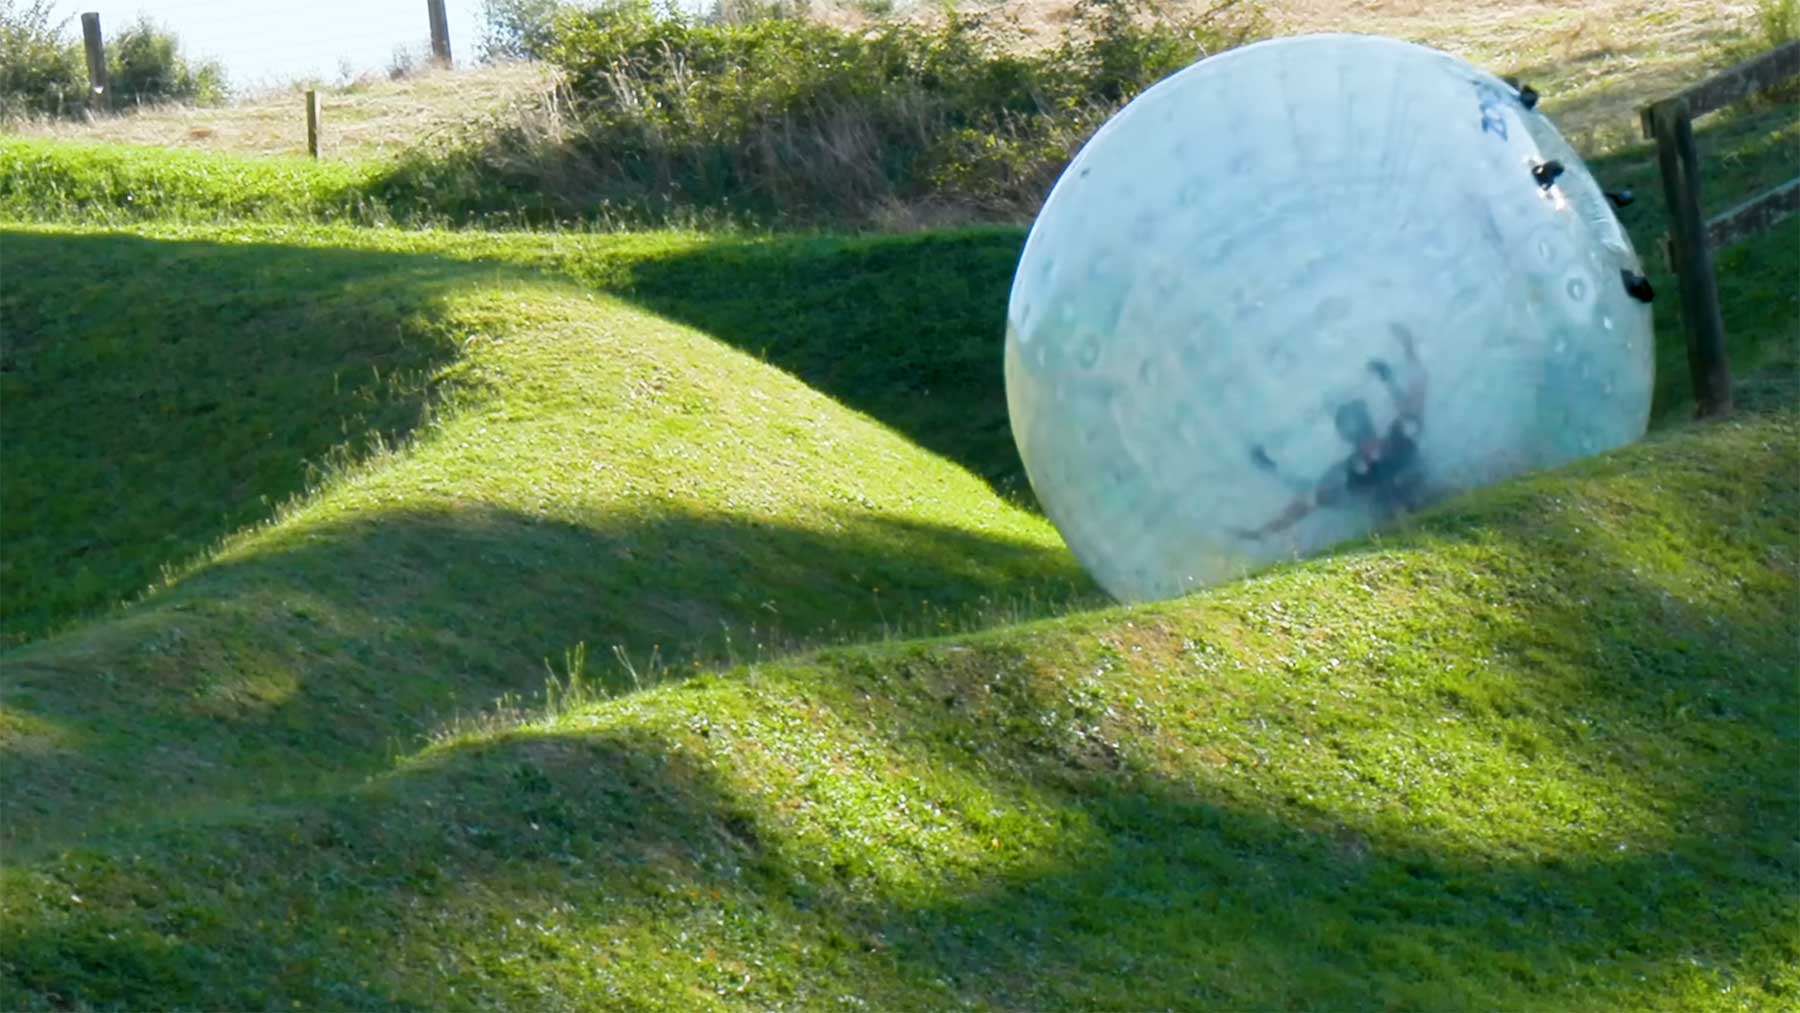 Zorbing: In aufblasbarem Ball Hügel hinunter rollen zorbing-neuseeland-ausblasbare-luftball-rollen 